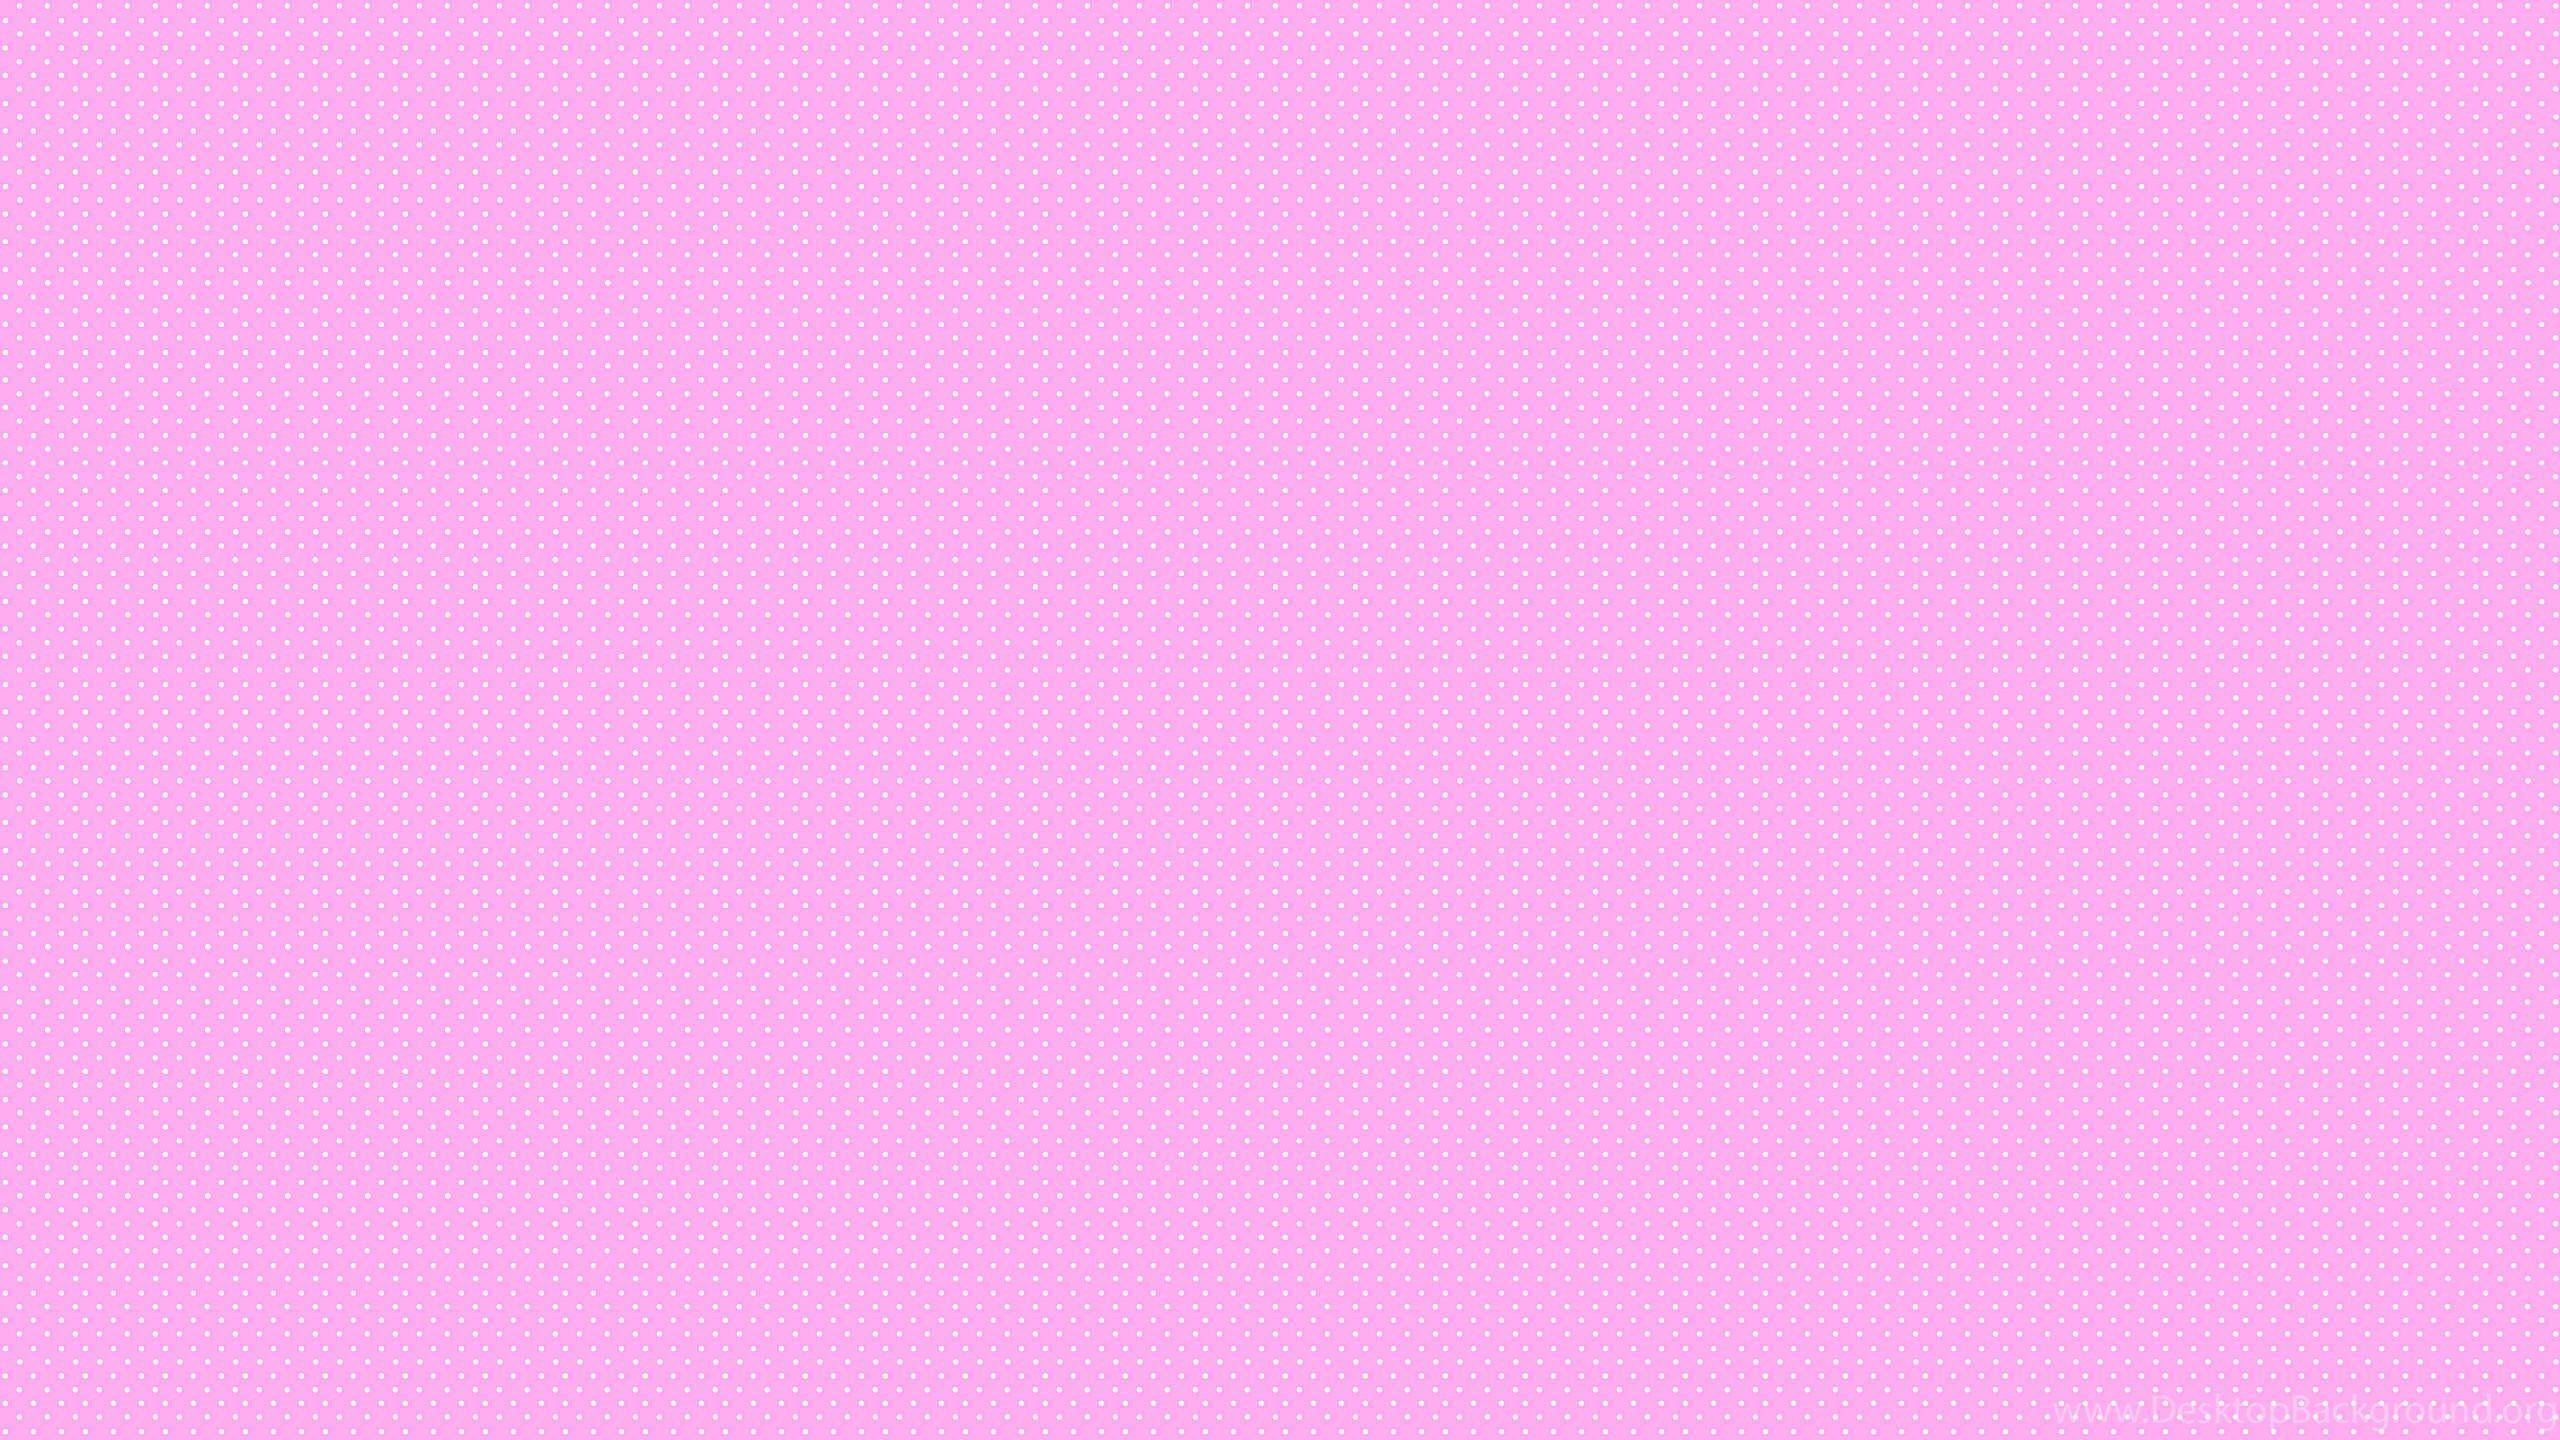 Hình nền máy tính màu hồng trơn - Ảnh nền máy tính màu hồng trơn miễn phí hàng đầu... : Màu hồng trơn là sự lựa chọn tuyệt vời cho các tín đồ đam mê sự đơn giản, thật tế và nhẹ nhàng. Với các hình nền máy tính màu hồng trơn, bạn có thể tạo ra một không gian làm việc, học tập đầy nữ tính và tươi mới. Hãy truy cập ngay WallpaperSafari để tải về các hình nền màu hồng trơn miễn phí hàng đầu.